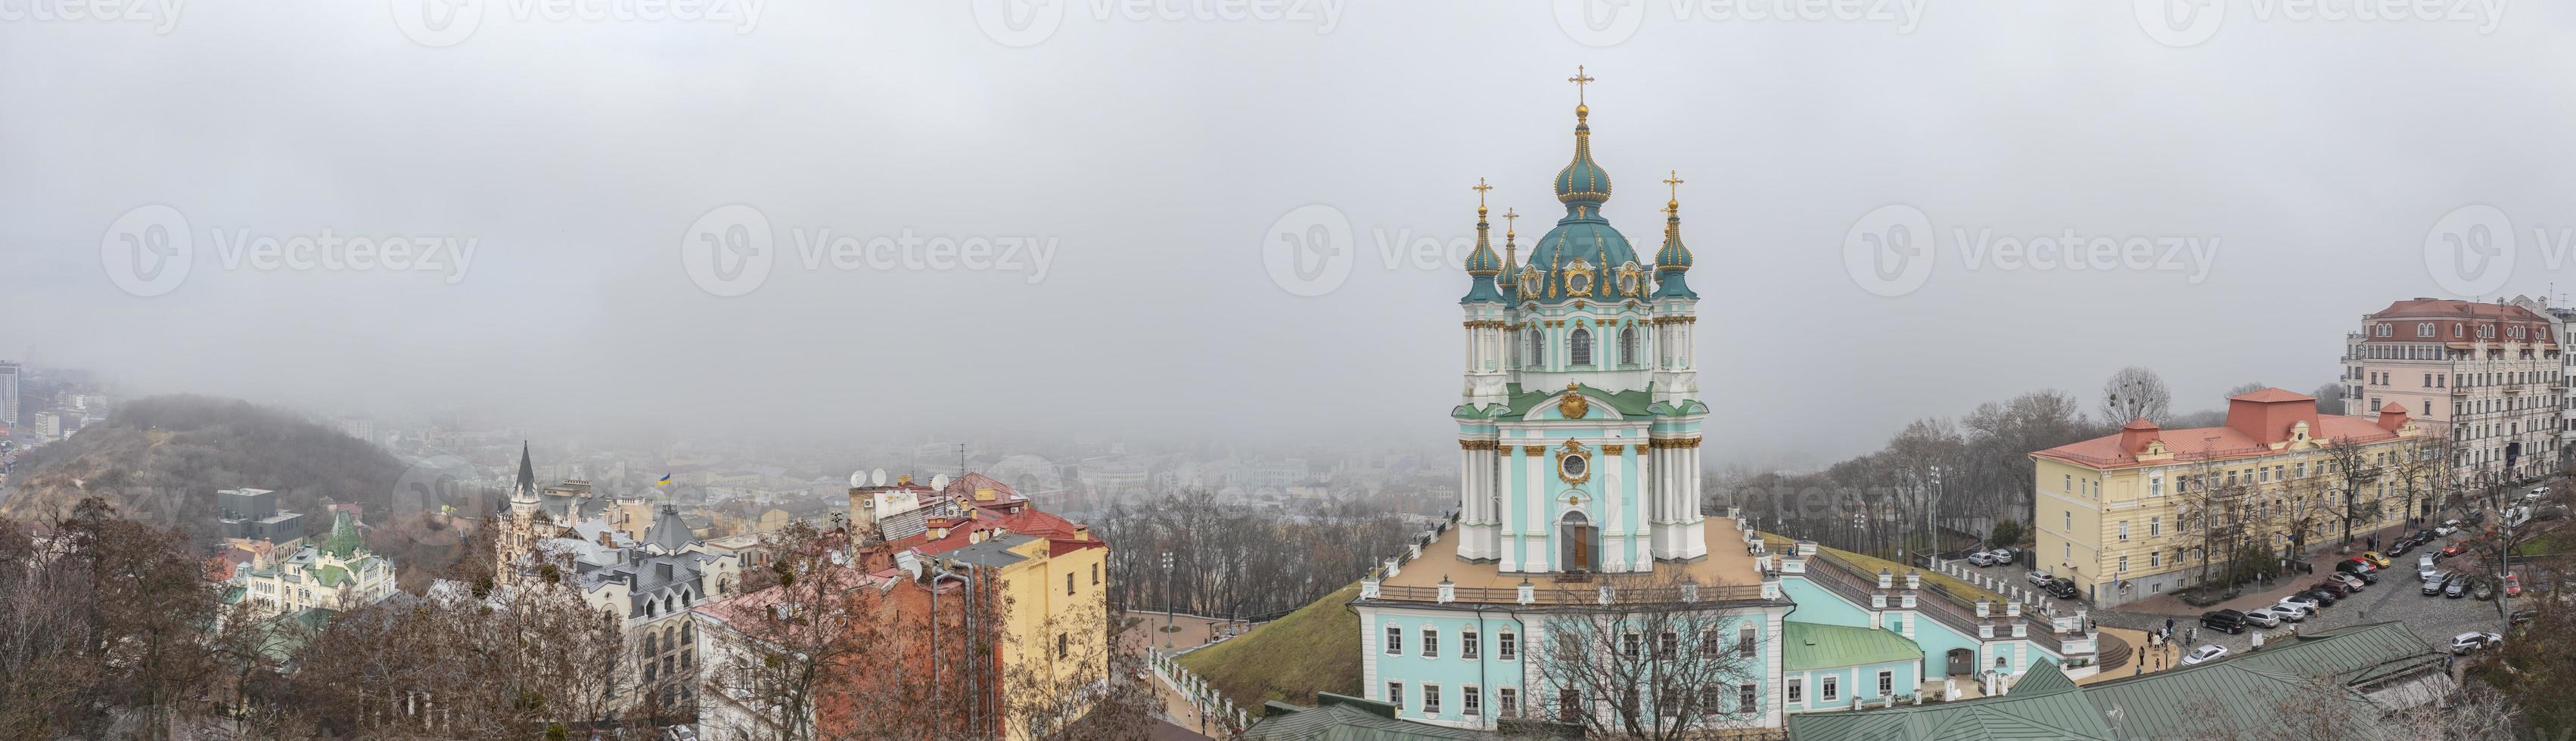 Flygfoto på en dimmig dag vid st. Andrews kyrka, kiev, Ukraina foto